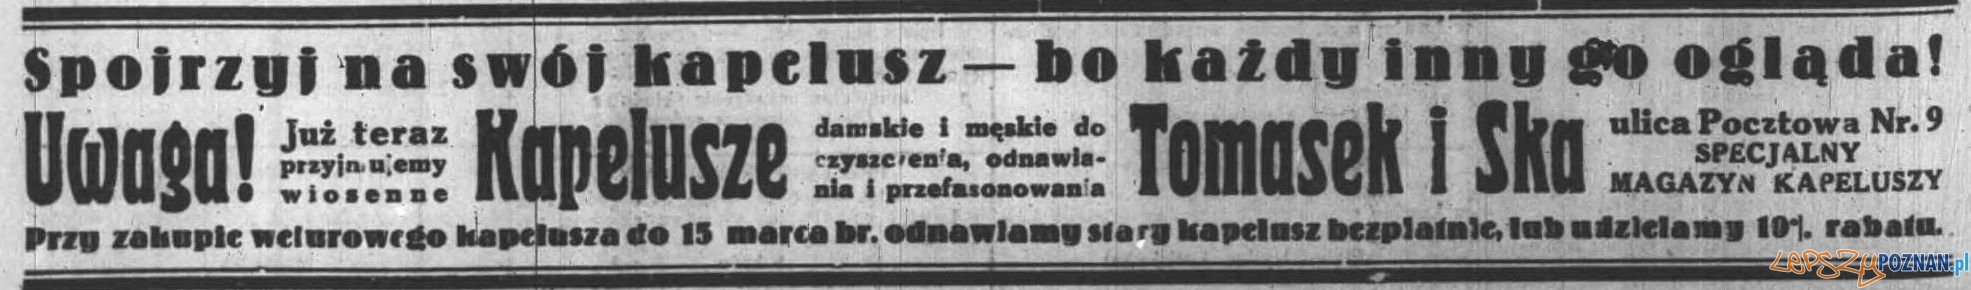 Anons prasowy w Dzienniku Poznańskim 5 lutego 1932